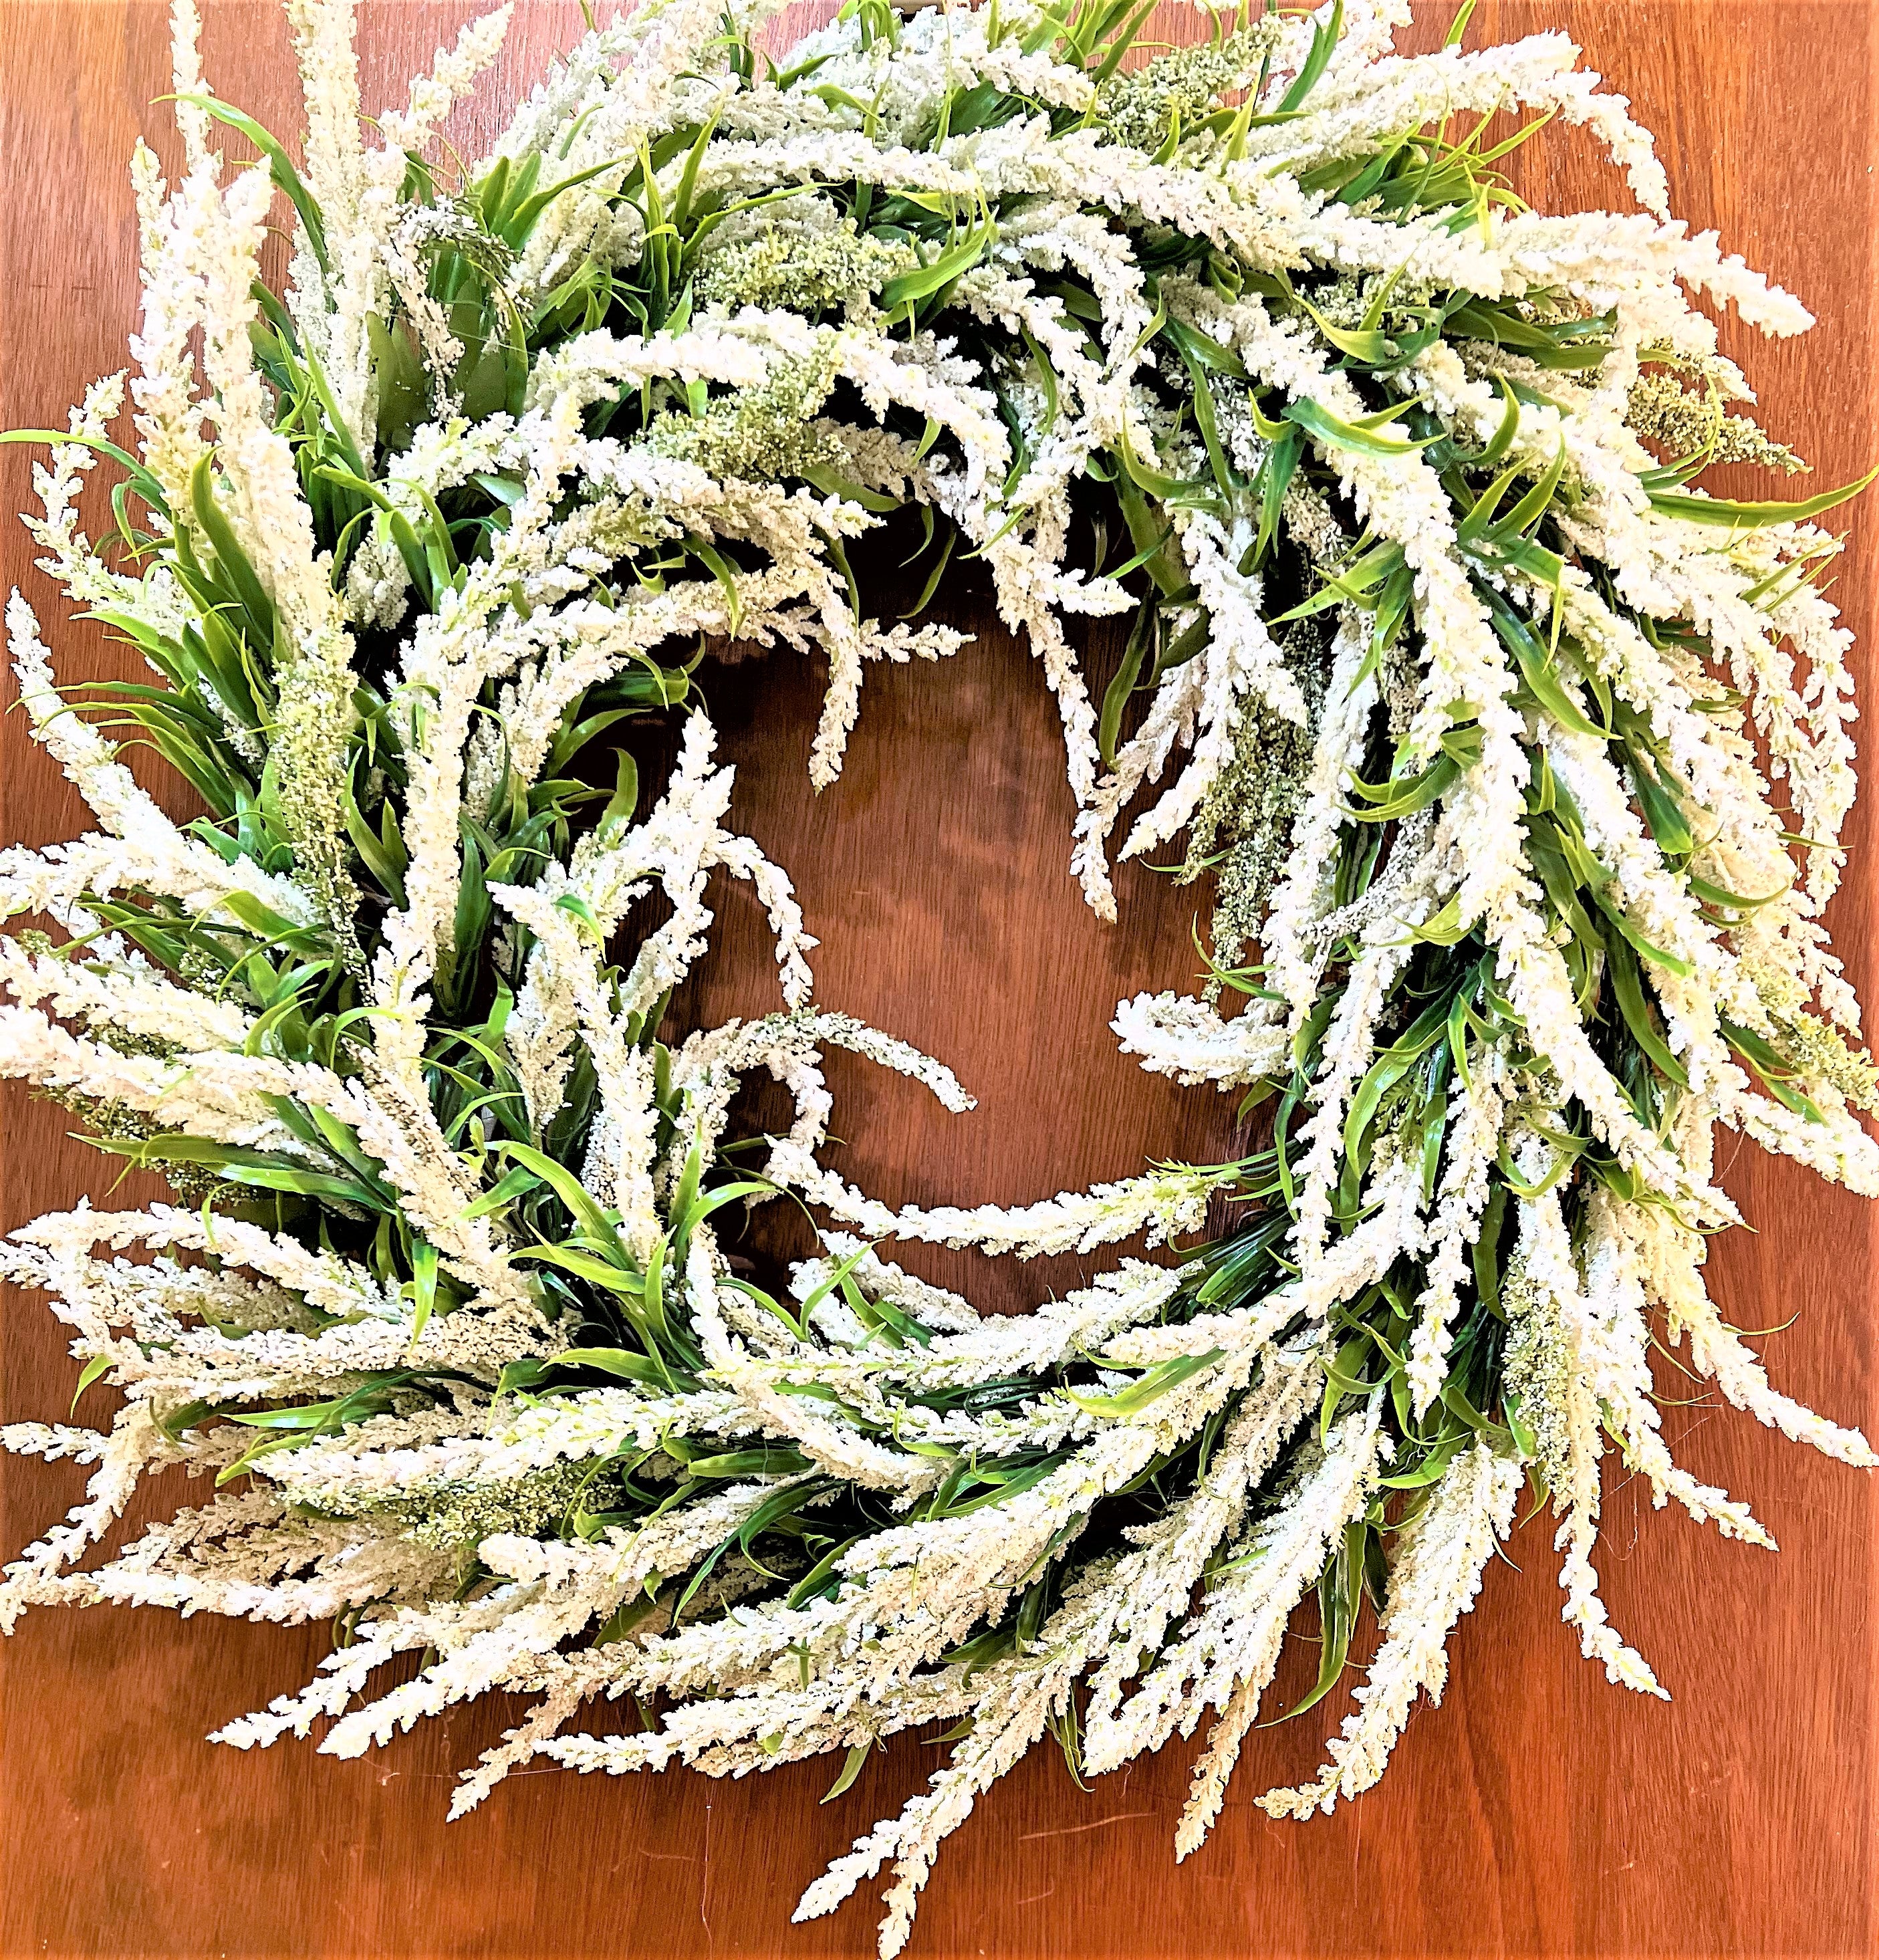 Cattail Spring-Summer Wreath- Front door Wreath- 26 inches Diameter